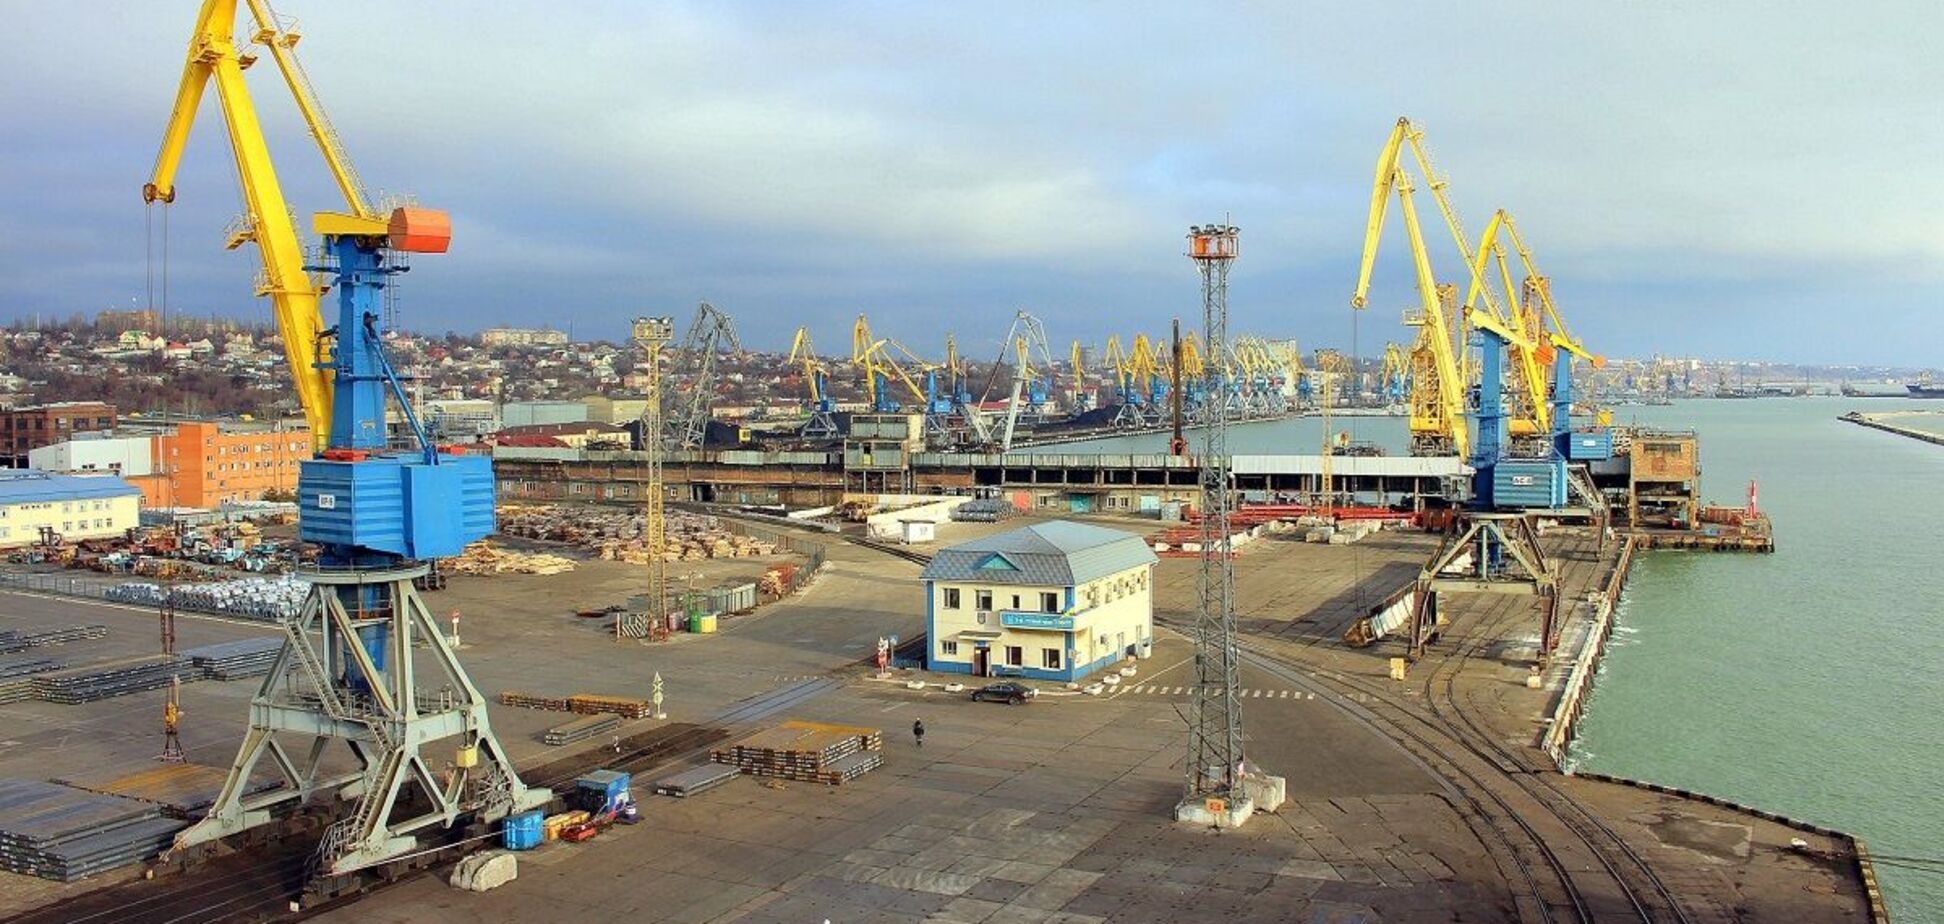 Разблокировка портов для экспорта металла даст экономике 600 млн валютных поступлений, – Головко